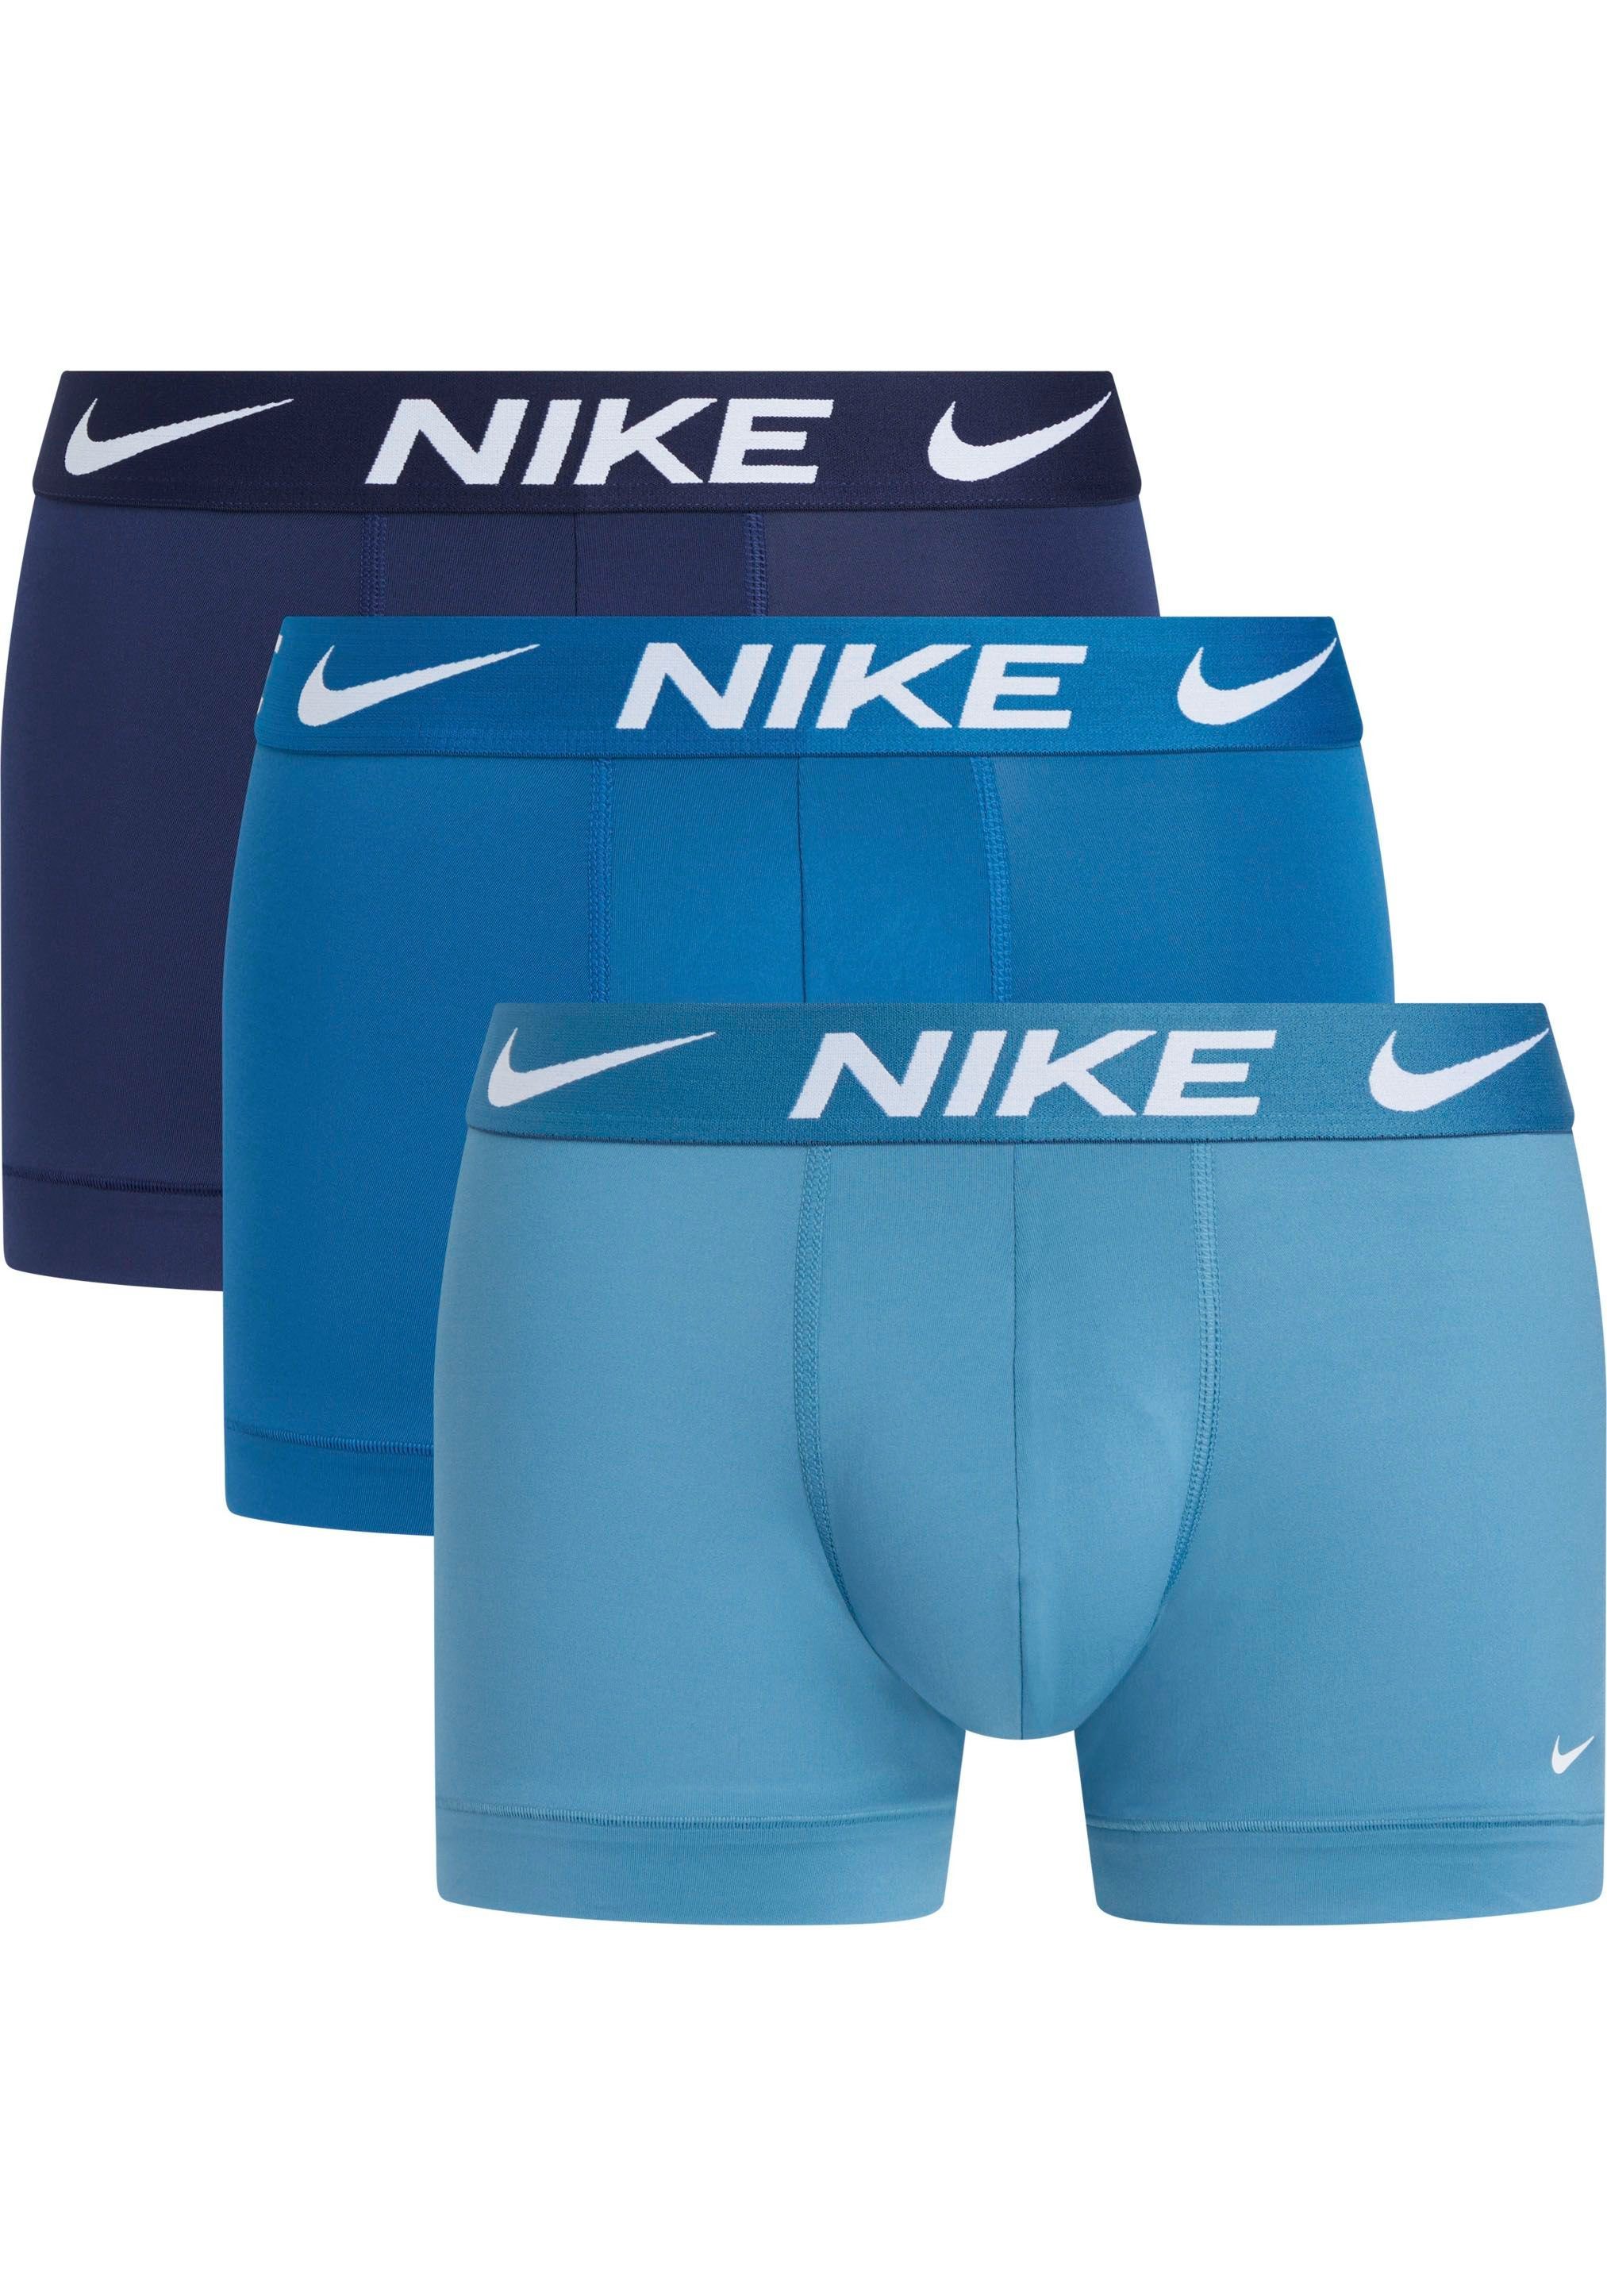 NIKE Underwear Trunk TRUNK 3PK (Packung, 3er-Pack) mit NIKE Logo-Elastikbund (3 Stück) NOISE_AQUA/INDSTRIAL_BL/MDNGHT_BLUE